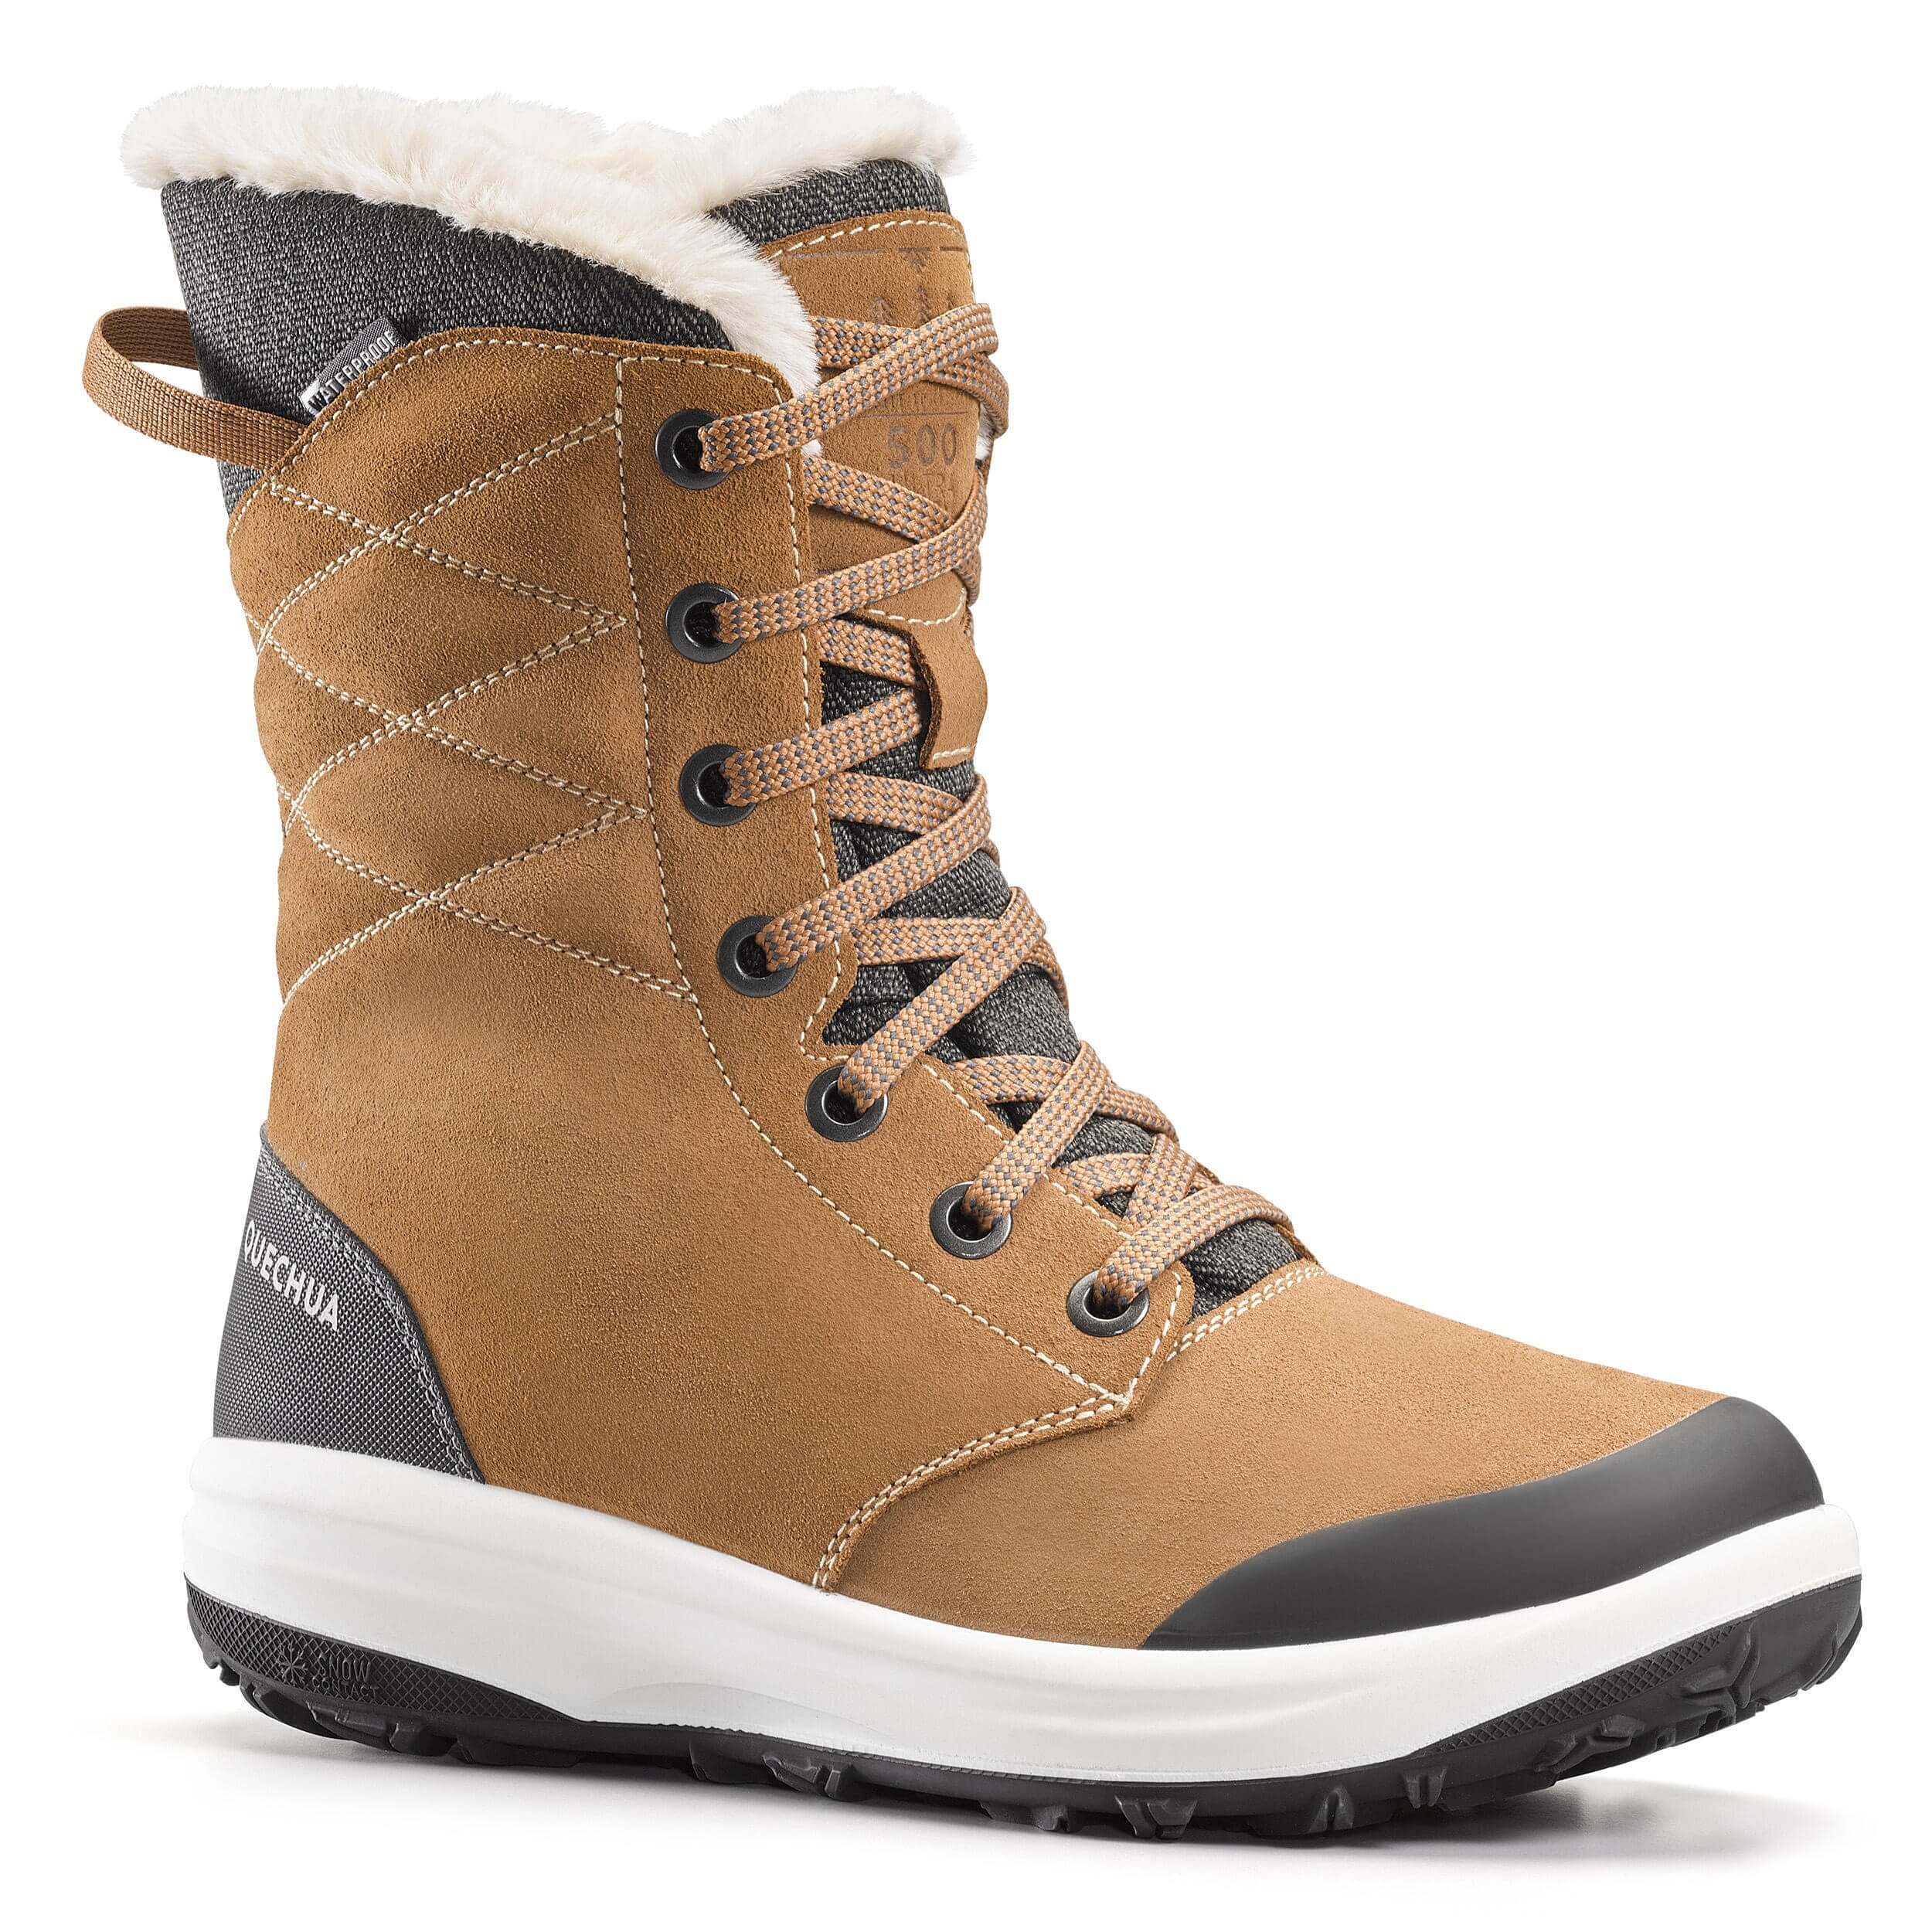 Ботинки зимние женские высокие кожаные теплые непромокаемые походныеQuechua SH900, коричневый – купить из-за границы через сервис«CDEK.Shopping»